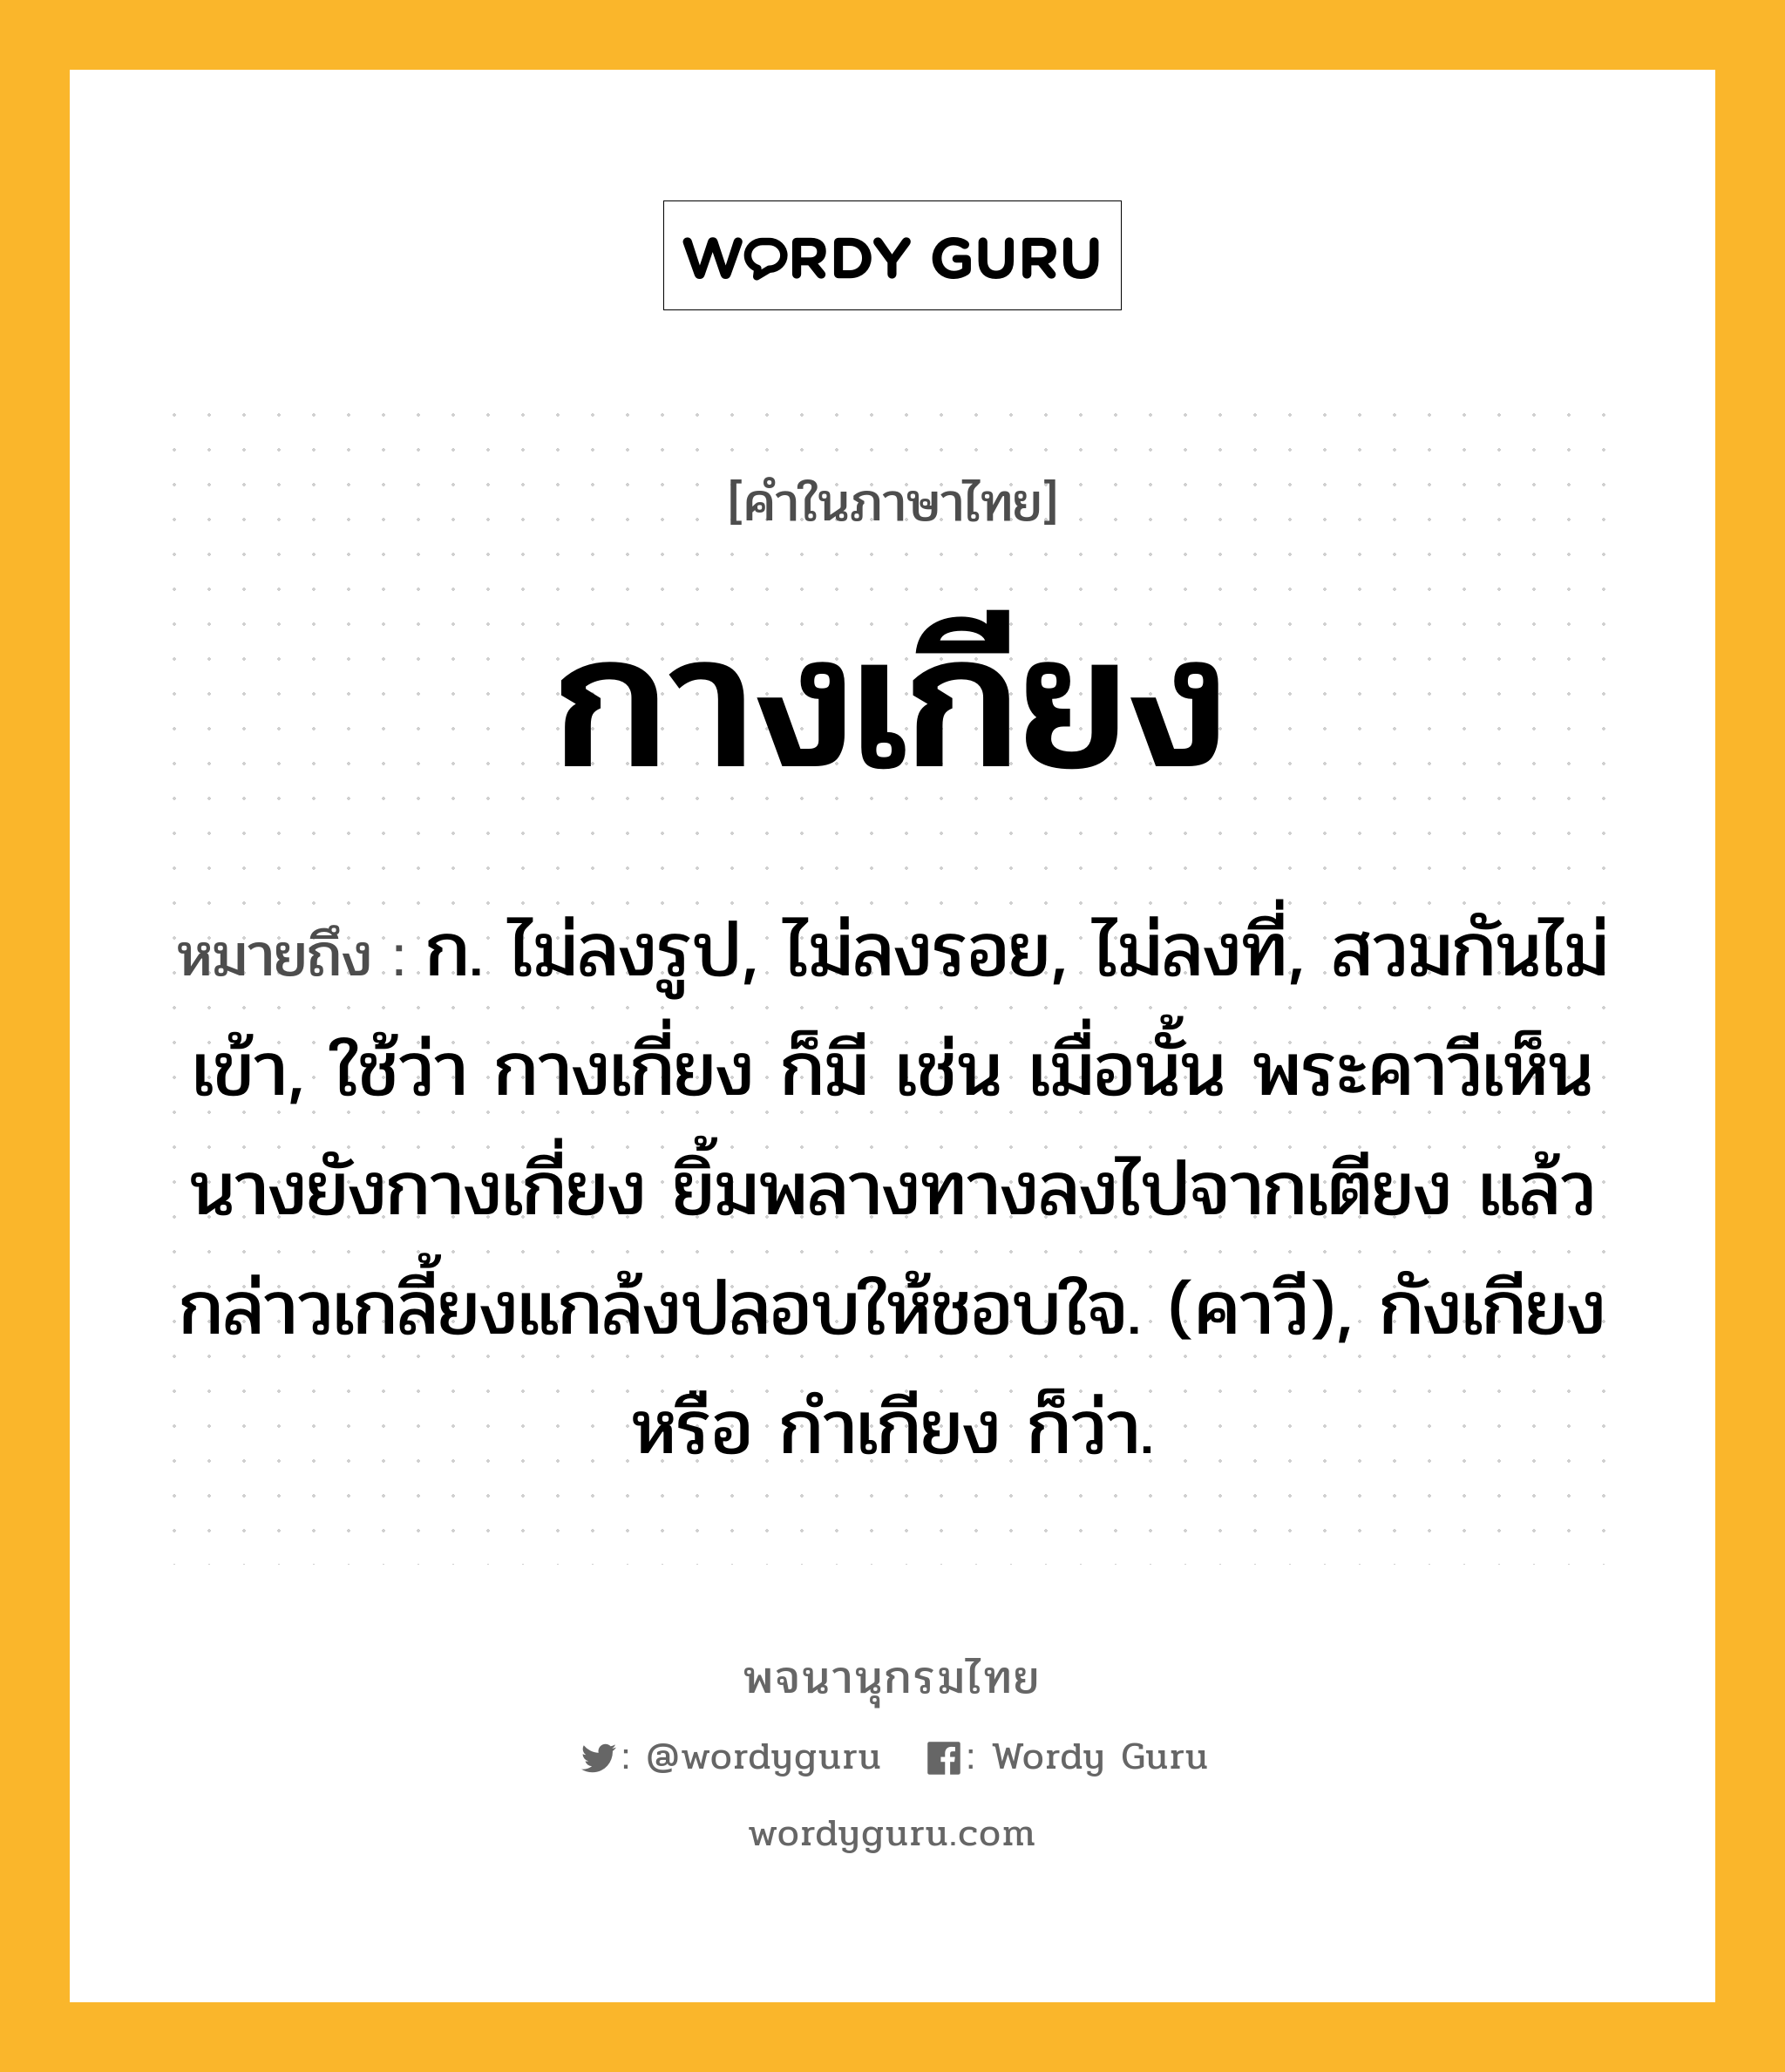 กางเกียง ความหมาย หมายถึงอะไร?, คำในภาษาไทย กางเกียง หมายถึง ก. ไม่ลงรูป, ไม่ลงรอย, ไม่ลงที่, สวมกันไม่เข้า, ใช้ว่า กางเกี่ยง ก็มี เช่น เมื่อนั้น พระคาวีเห็นนางยังกางเกี่ยง ยิ้มพลางทางลงไปจากเตียง แล้วกล่าวเกลี้ยงแกล้งปลอบให้ชอบใจ. (คาวี), กังเกียง หรือ กําเกียง ก็ว่า.